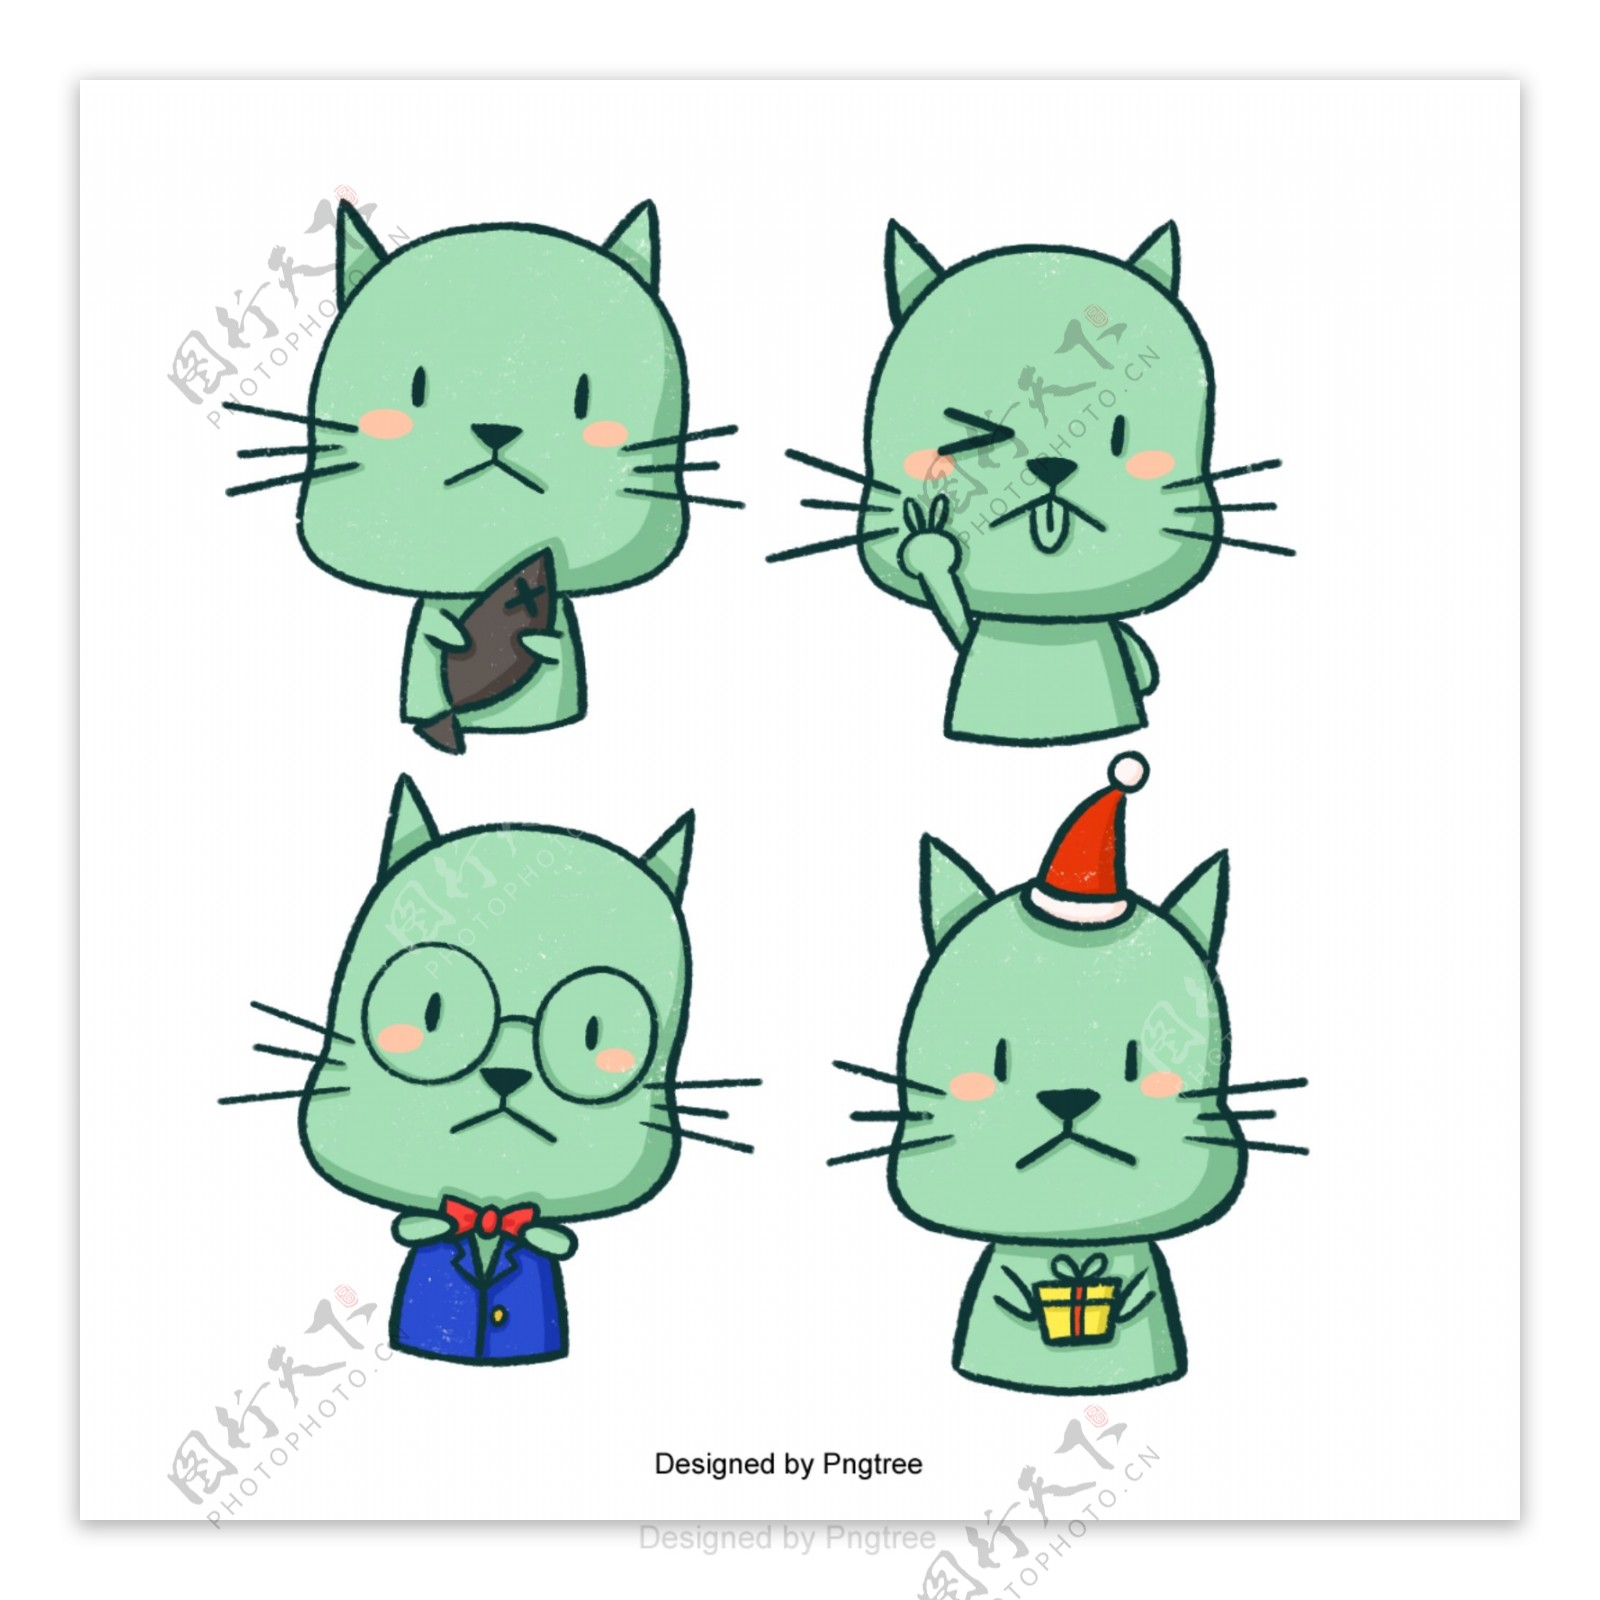 可爱的卡通绿猫